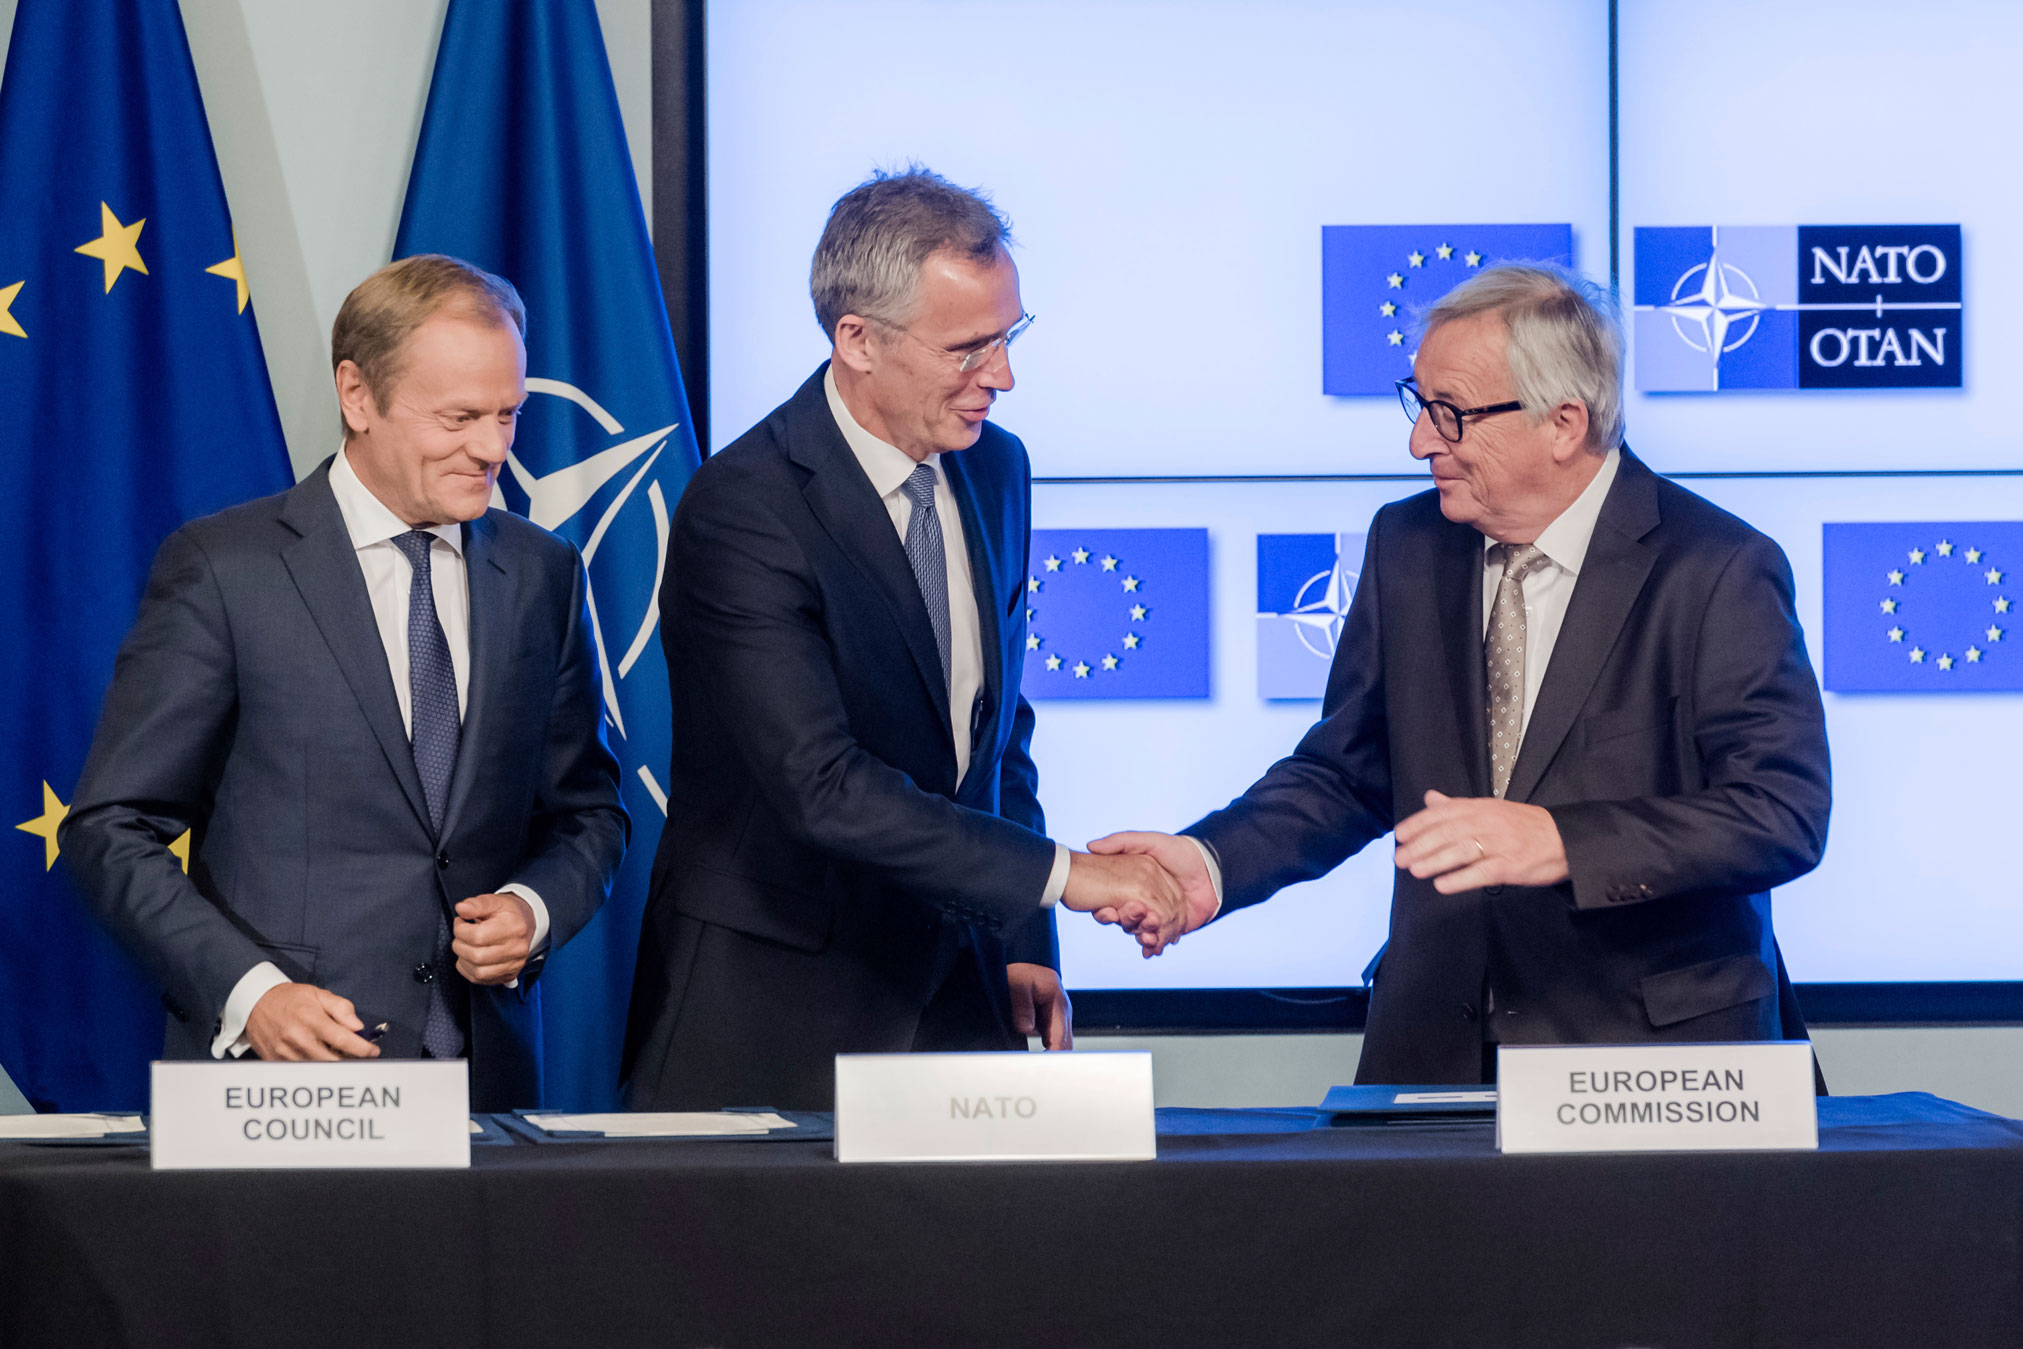 الأمين العام لحلف الناتو ينس ستولتنبرغ يتوسط رئيس المفوضية الأوروبية جان كلود يونكر ورئيس الاتحاد الأوروبي دونالد توسك